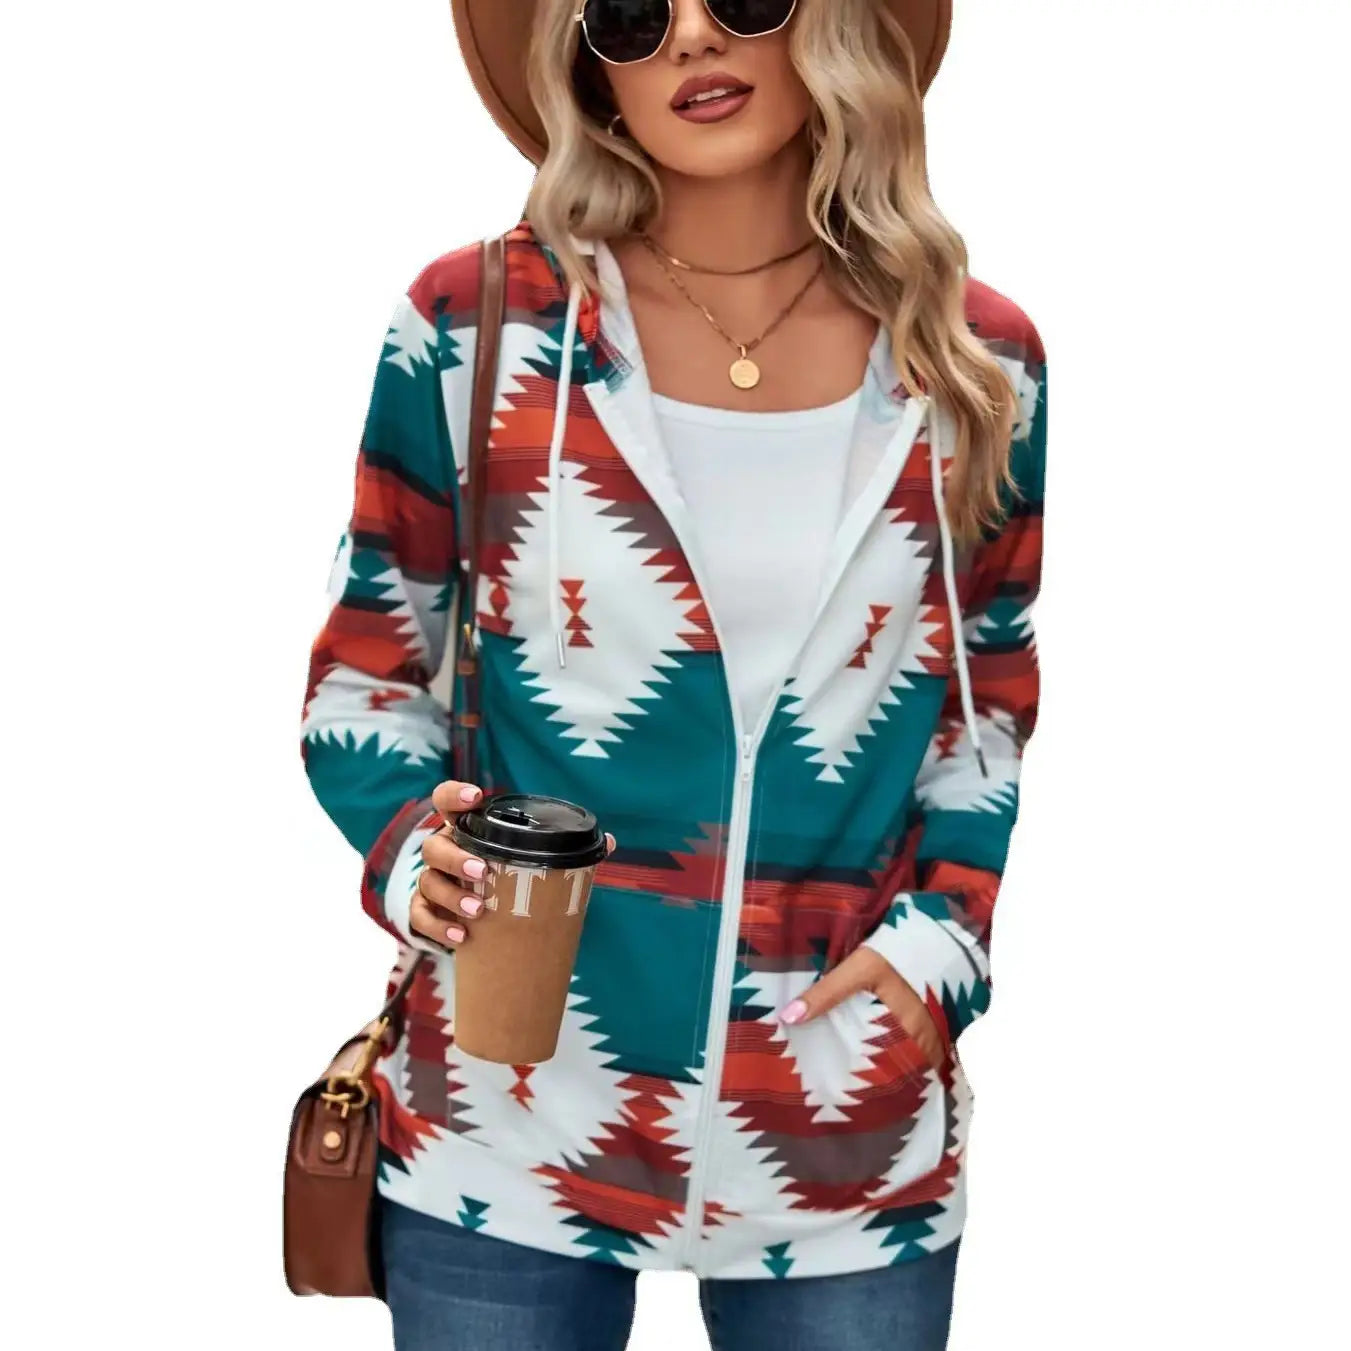 Women’s Zip Up Sweatshirt Jacket Hoodie With Pocket